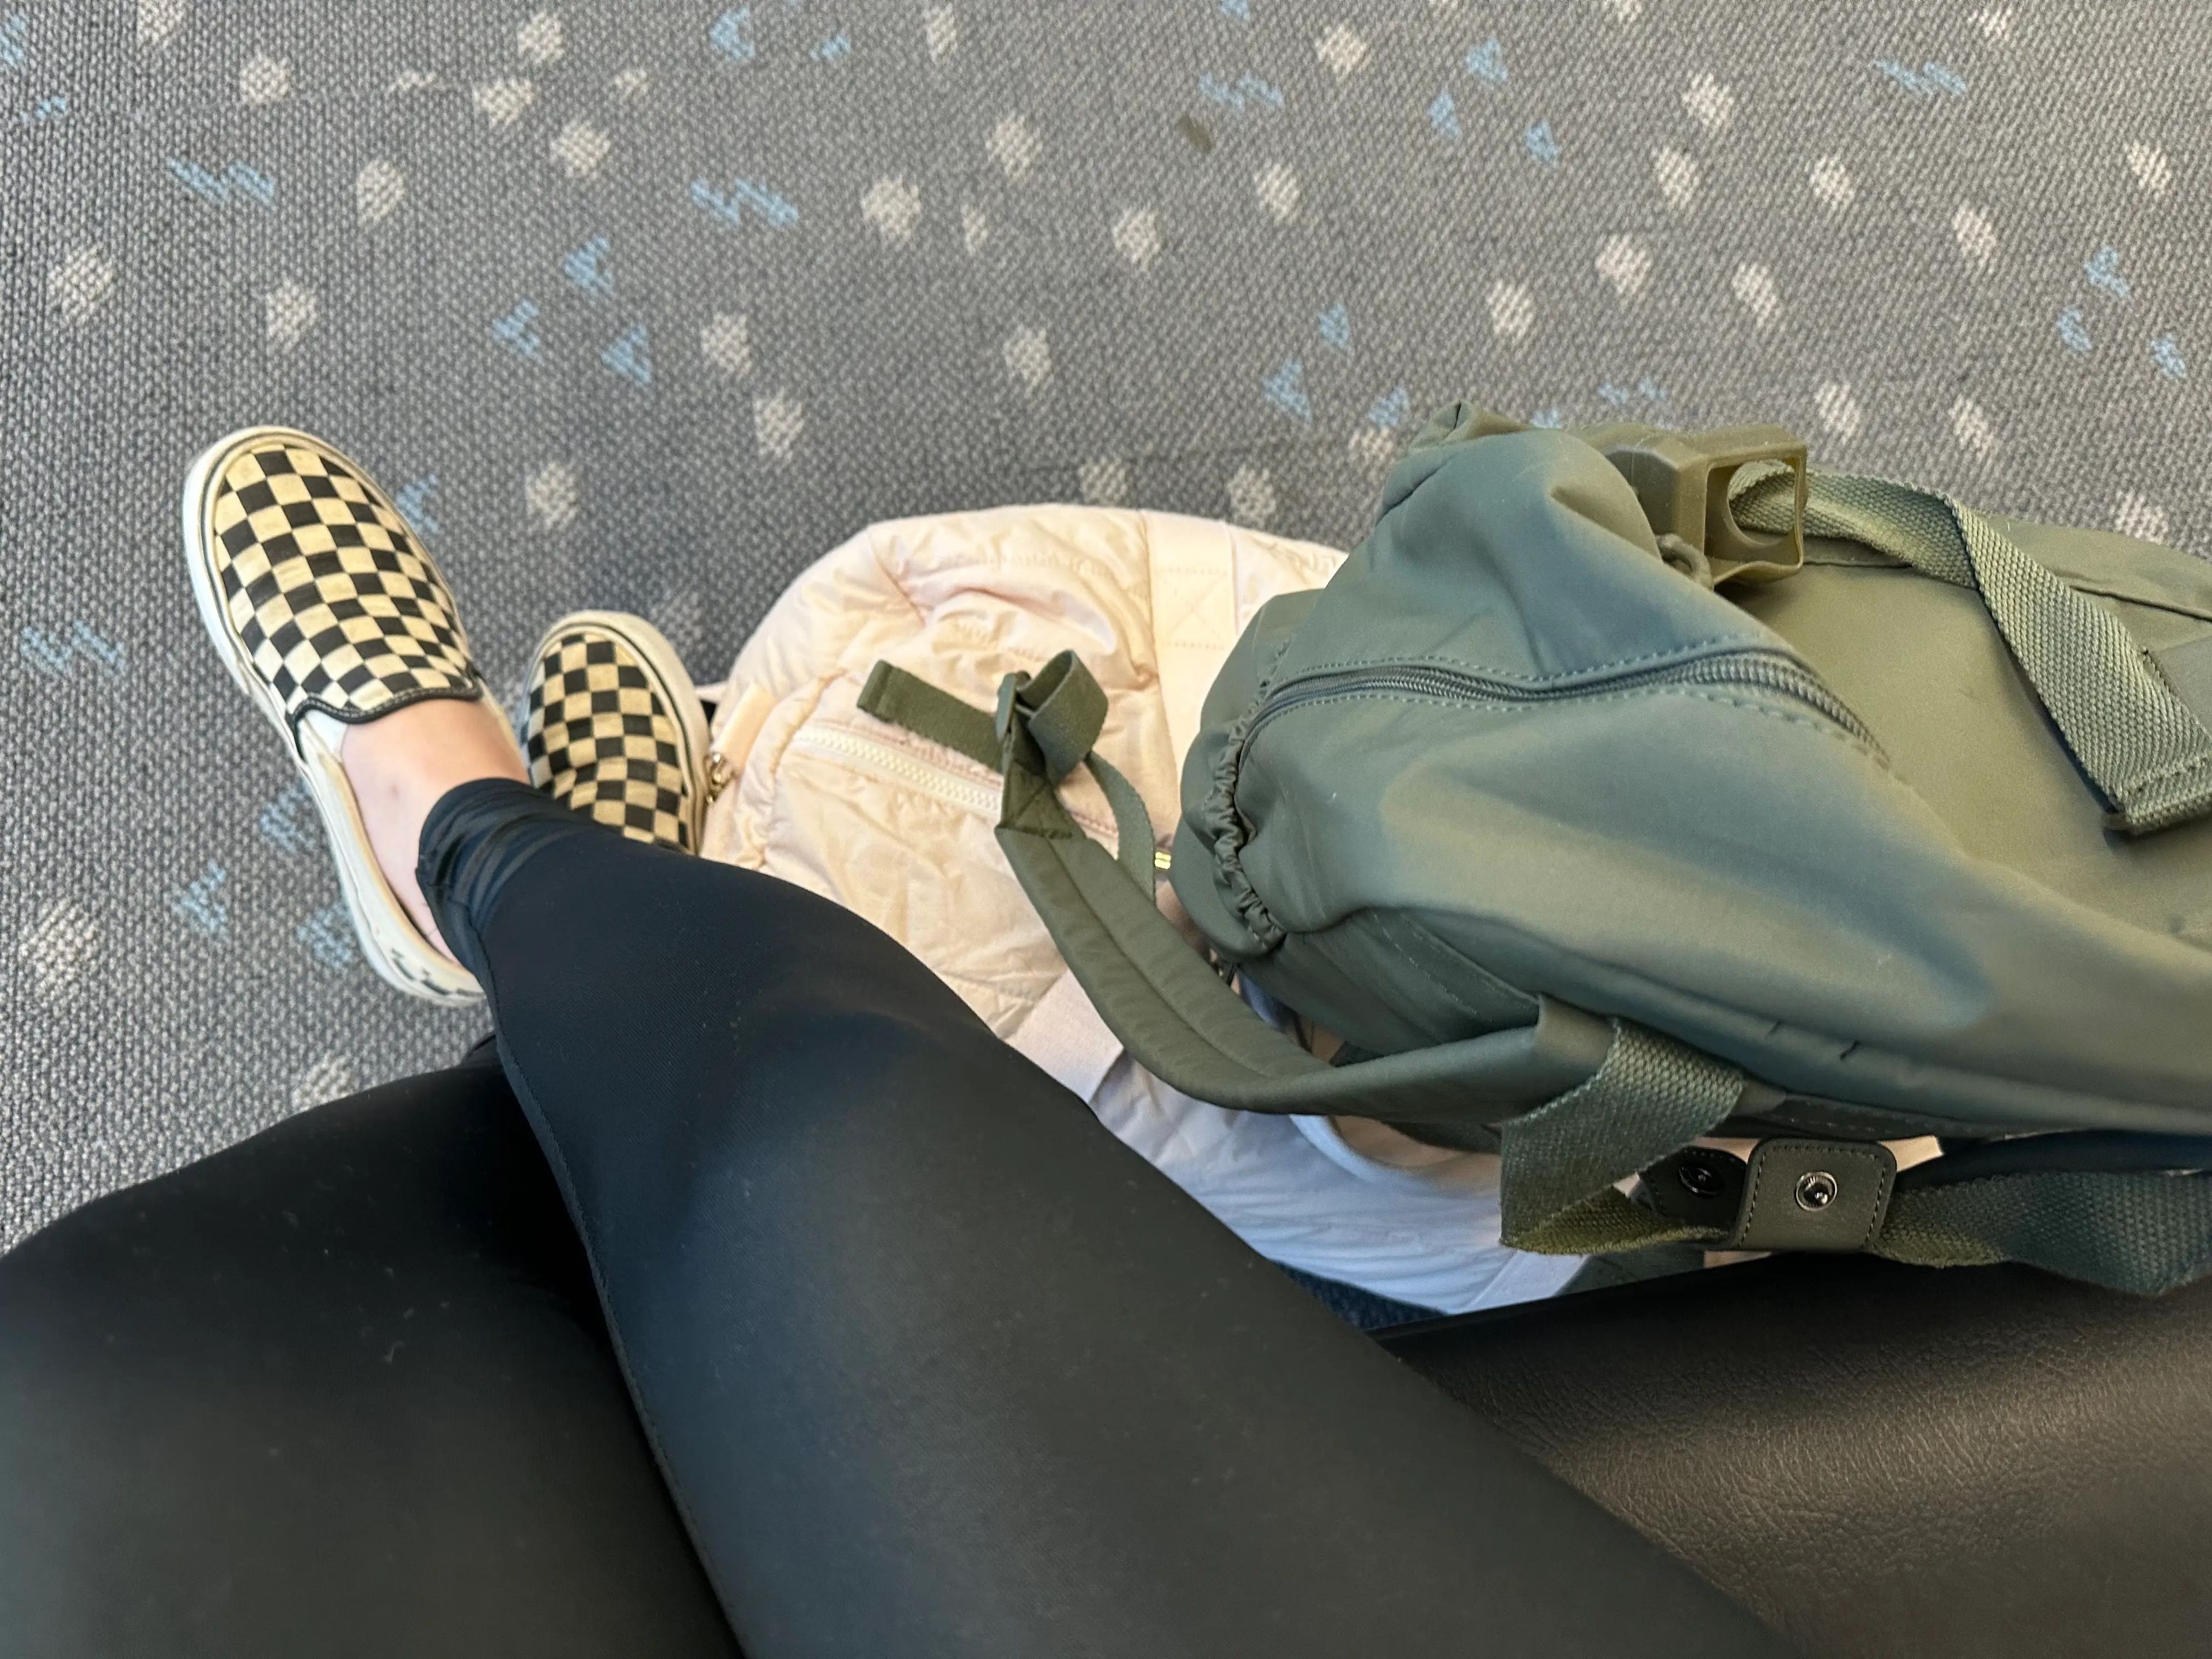 En mi último vuelo, llevaba mis leggings habituales y zapatillas de deporte.